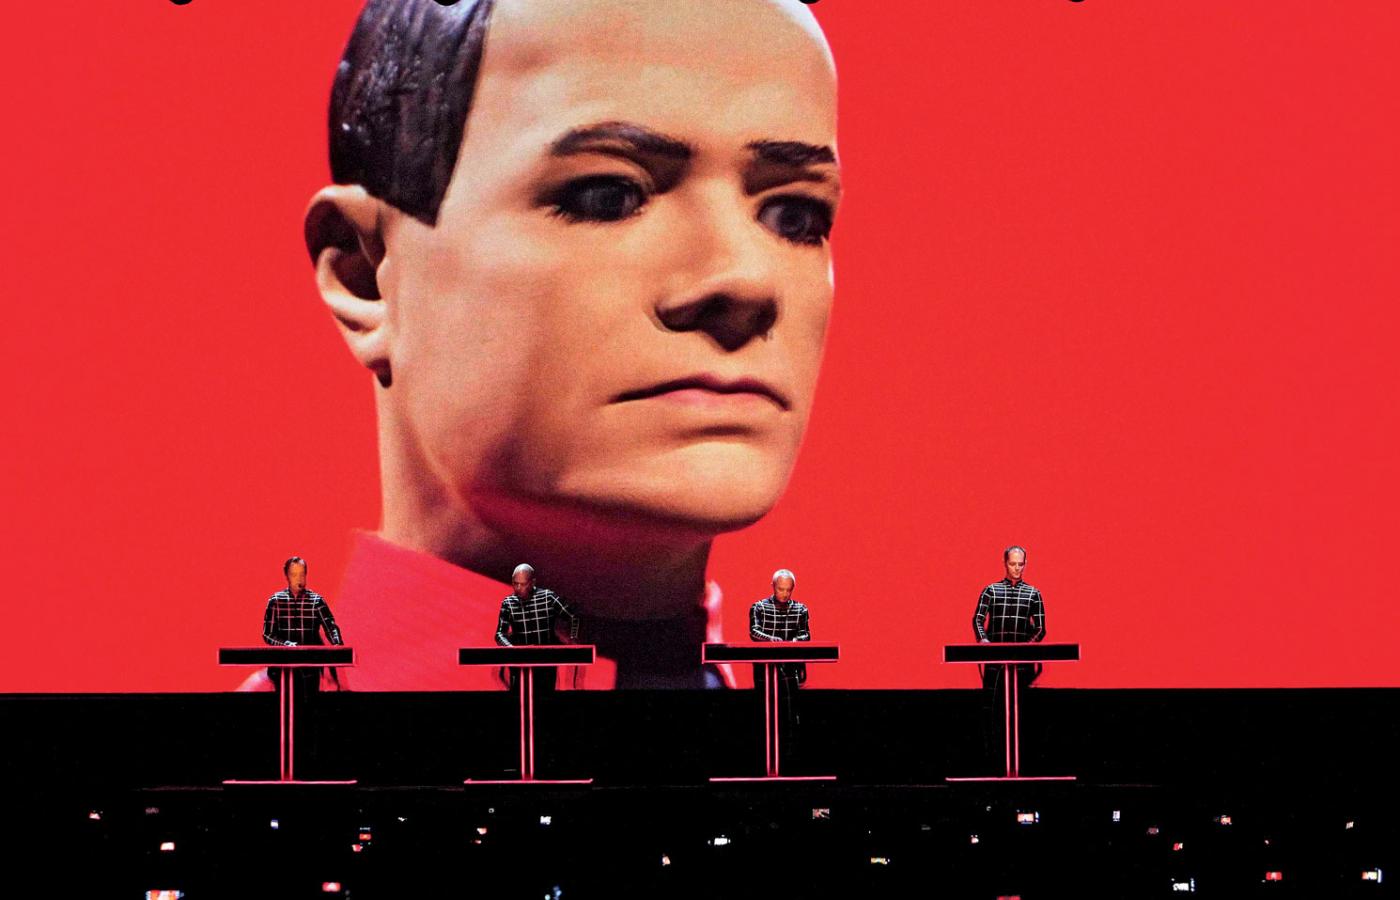 Zespół Kraftwerk jest najlepszym przykładem transhumanizmu w muzyce. Część jego scenicznych obowiązków wykonują ruchome manekiny.